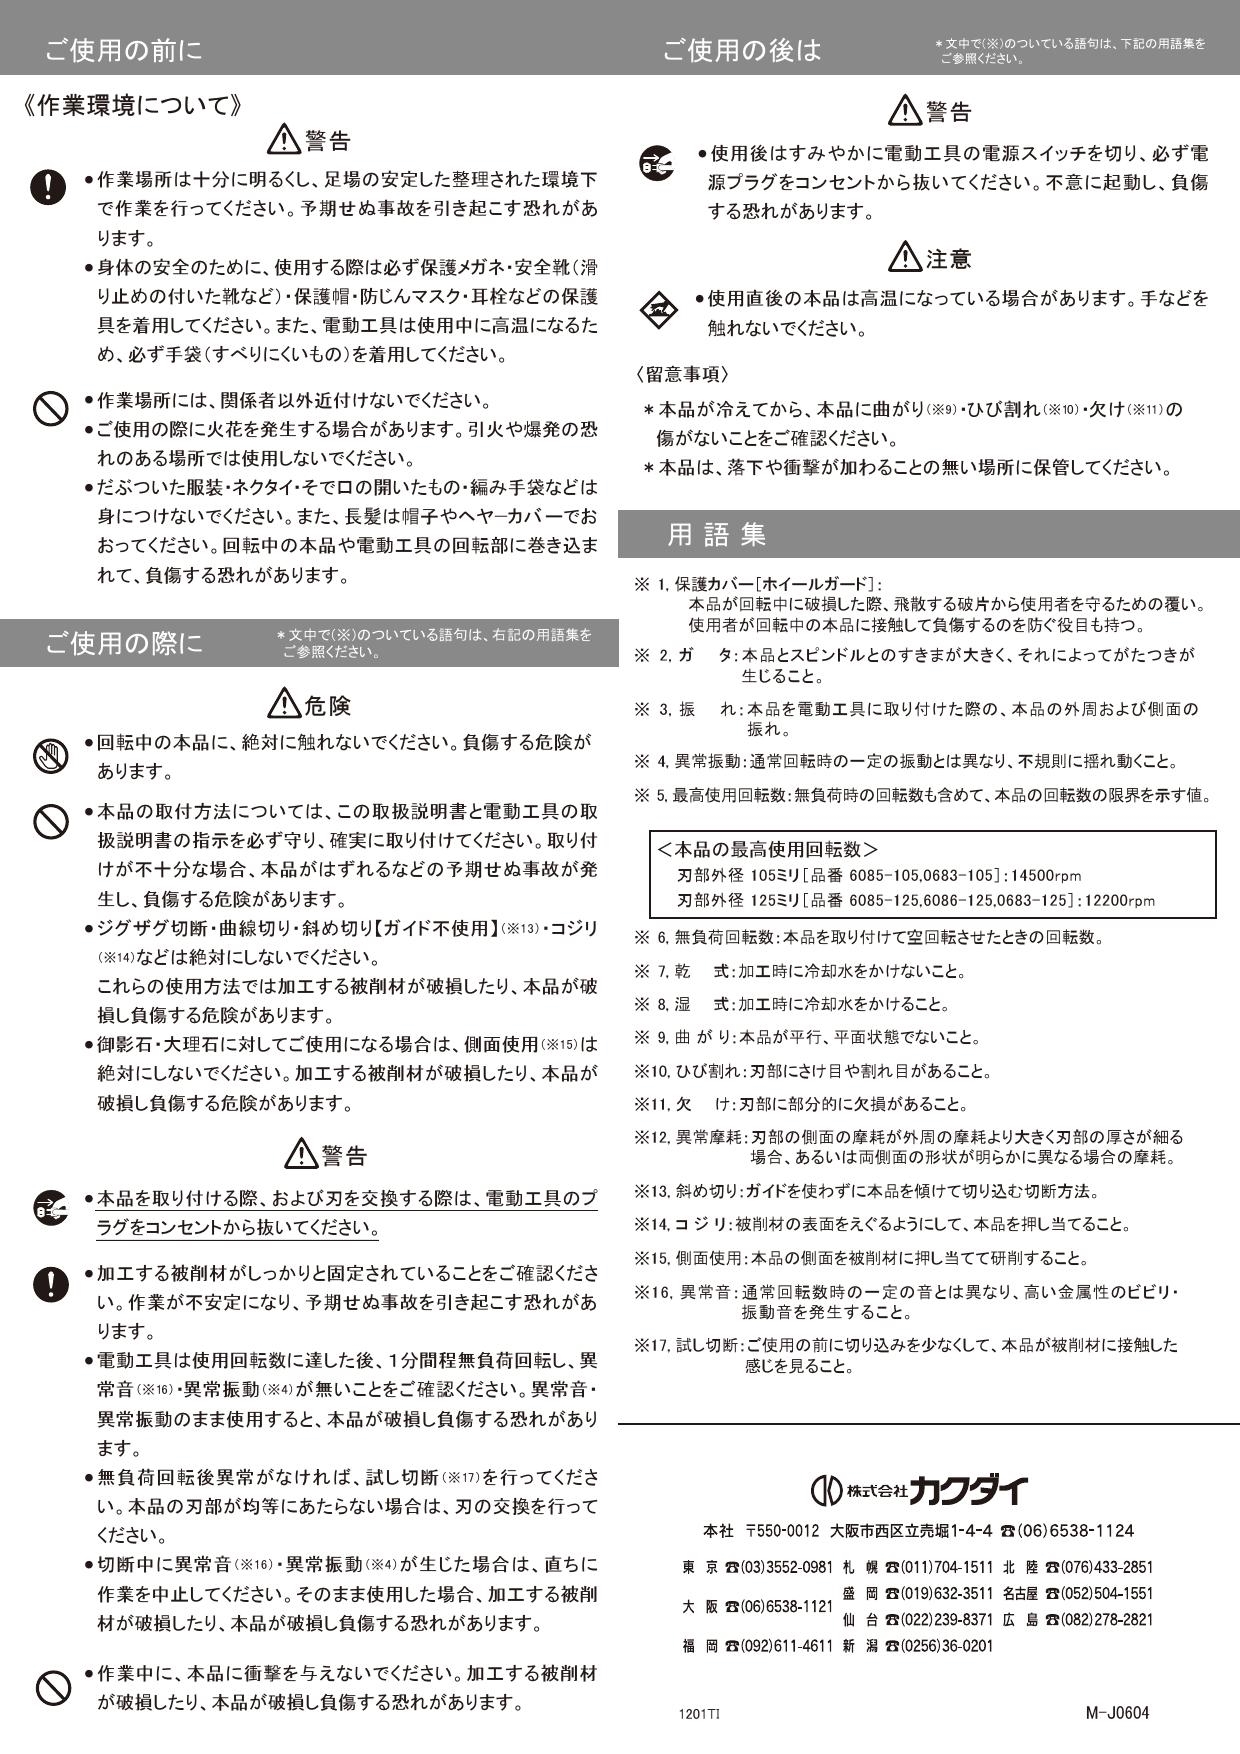 0683-125 カクダイ サイレントカッター用替刃 125 KAKUDAI